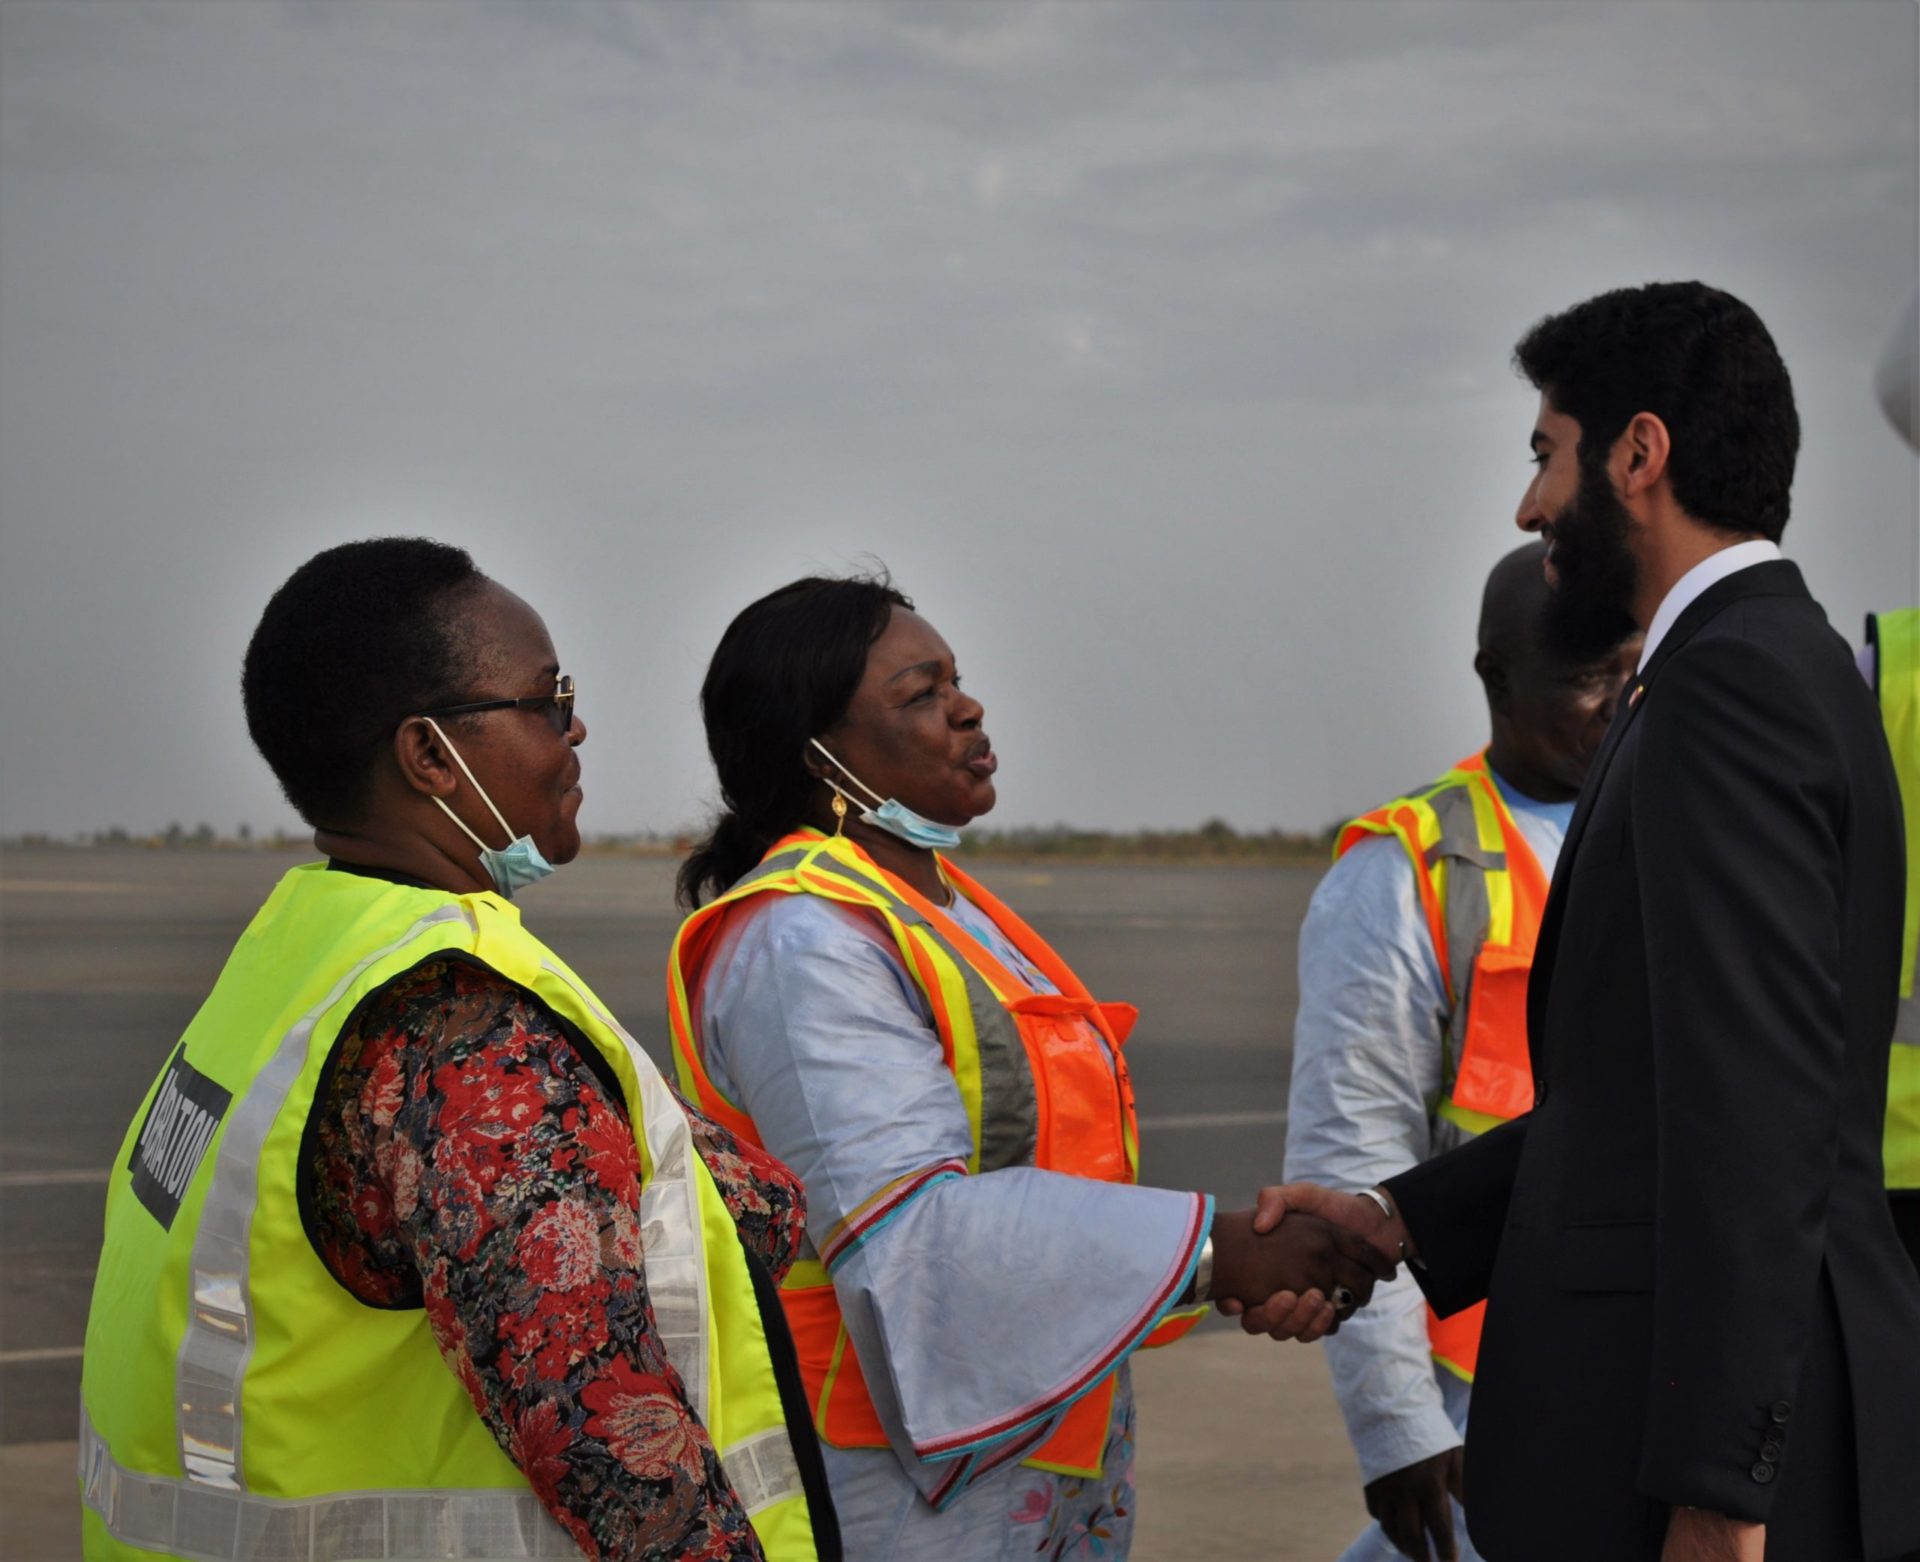 Une délégation de l'OCE, menée par son Secrétaire général, S. E. M. Manssour Bin Mussallam, est arrivée ce samedi après-midi à l'Áéroport International de Banjul en visite officielle à l'invitation du Gouvernement.